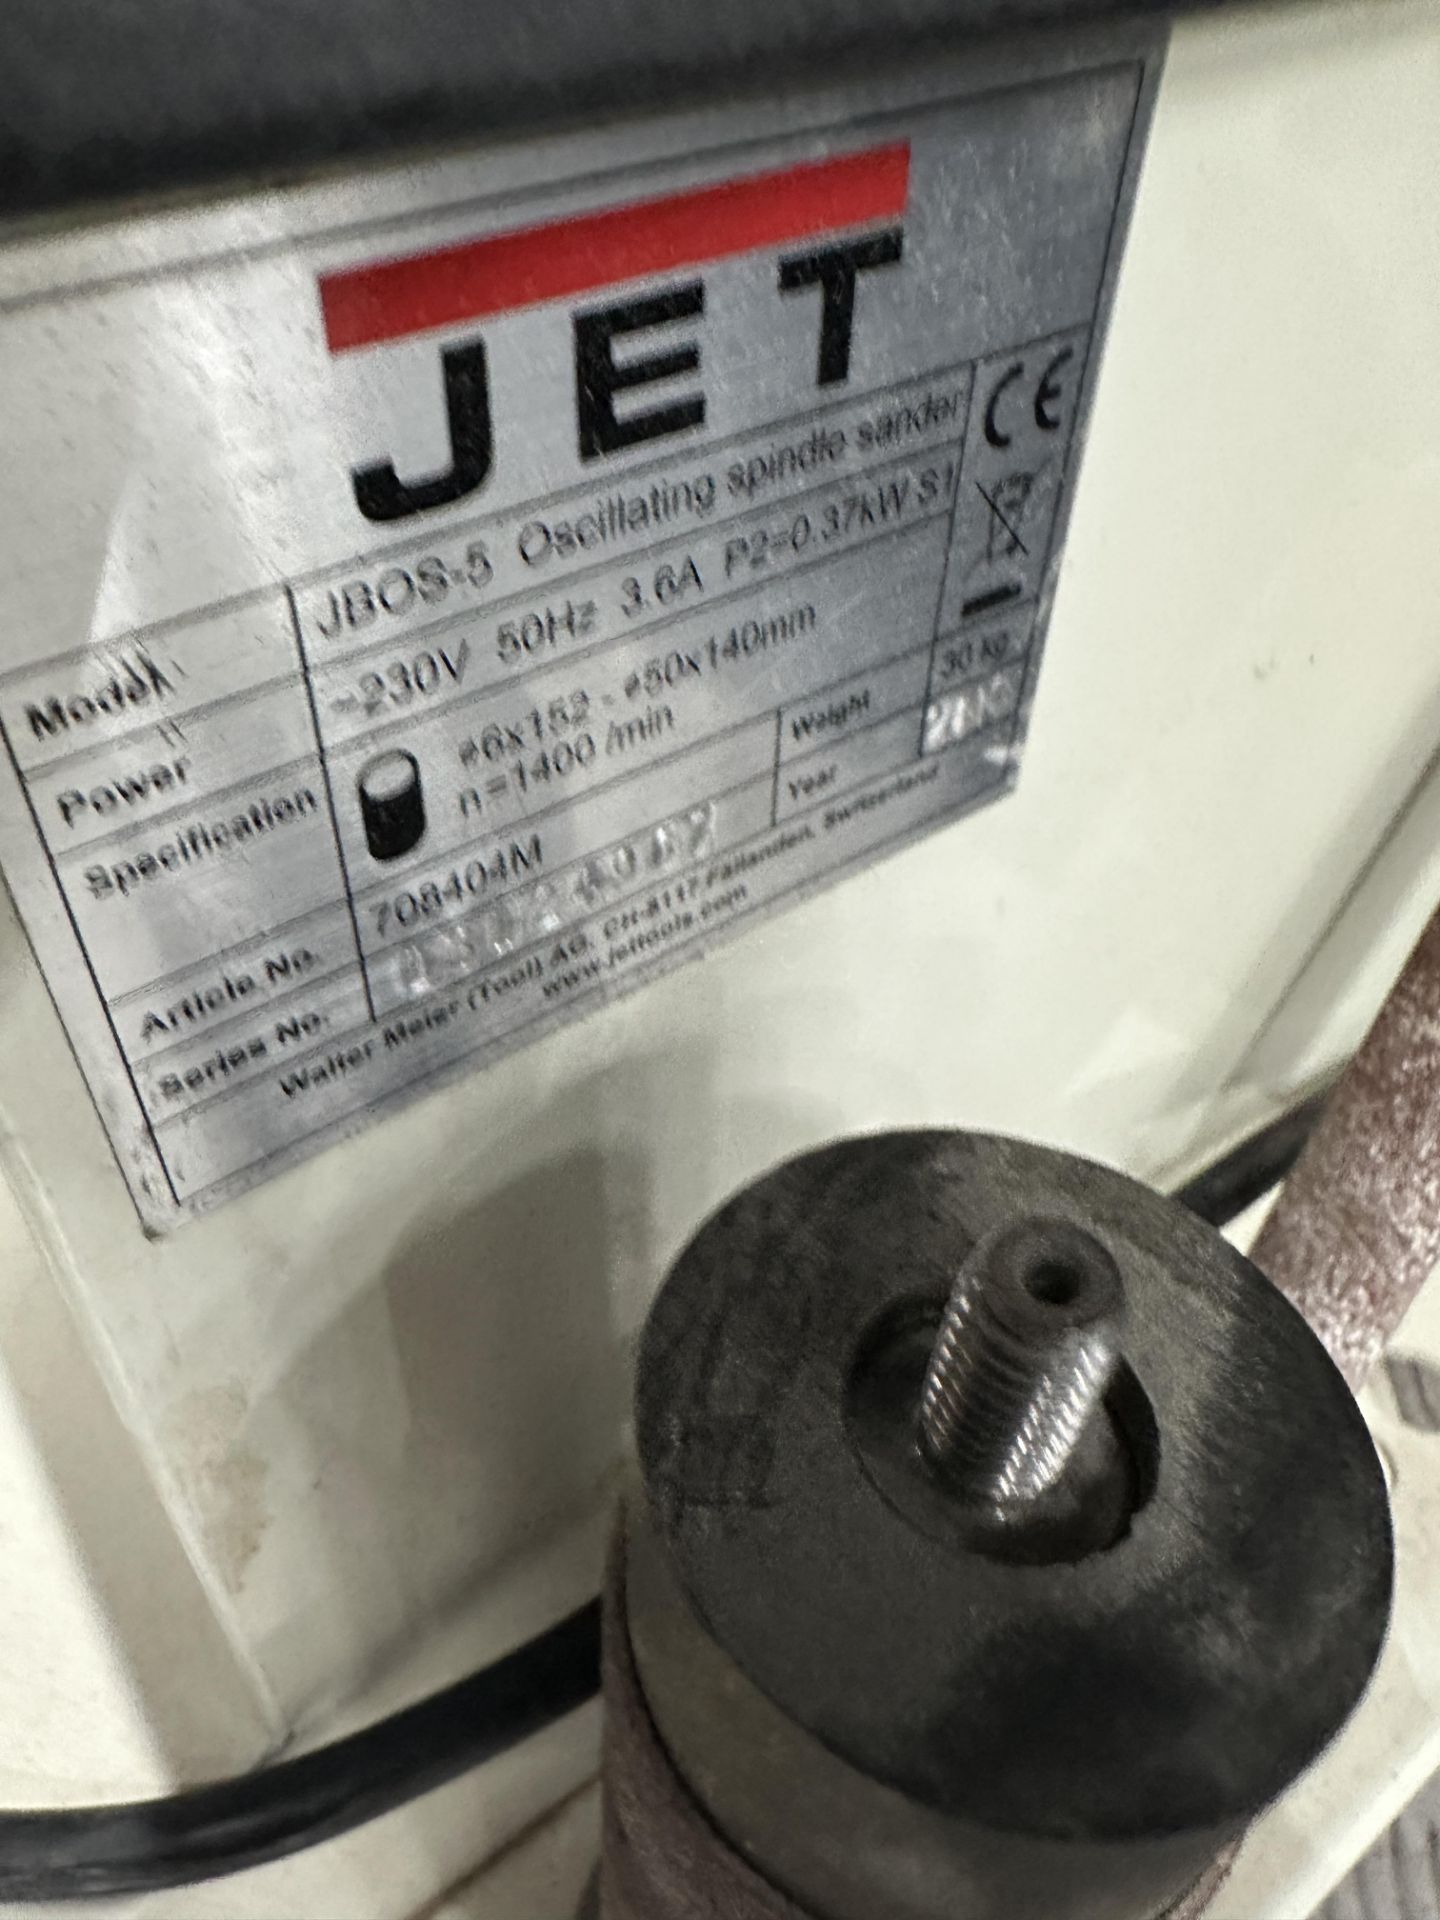 Jet JB0S 5 Oscillating spindle sander - Bild 3 aus 5